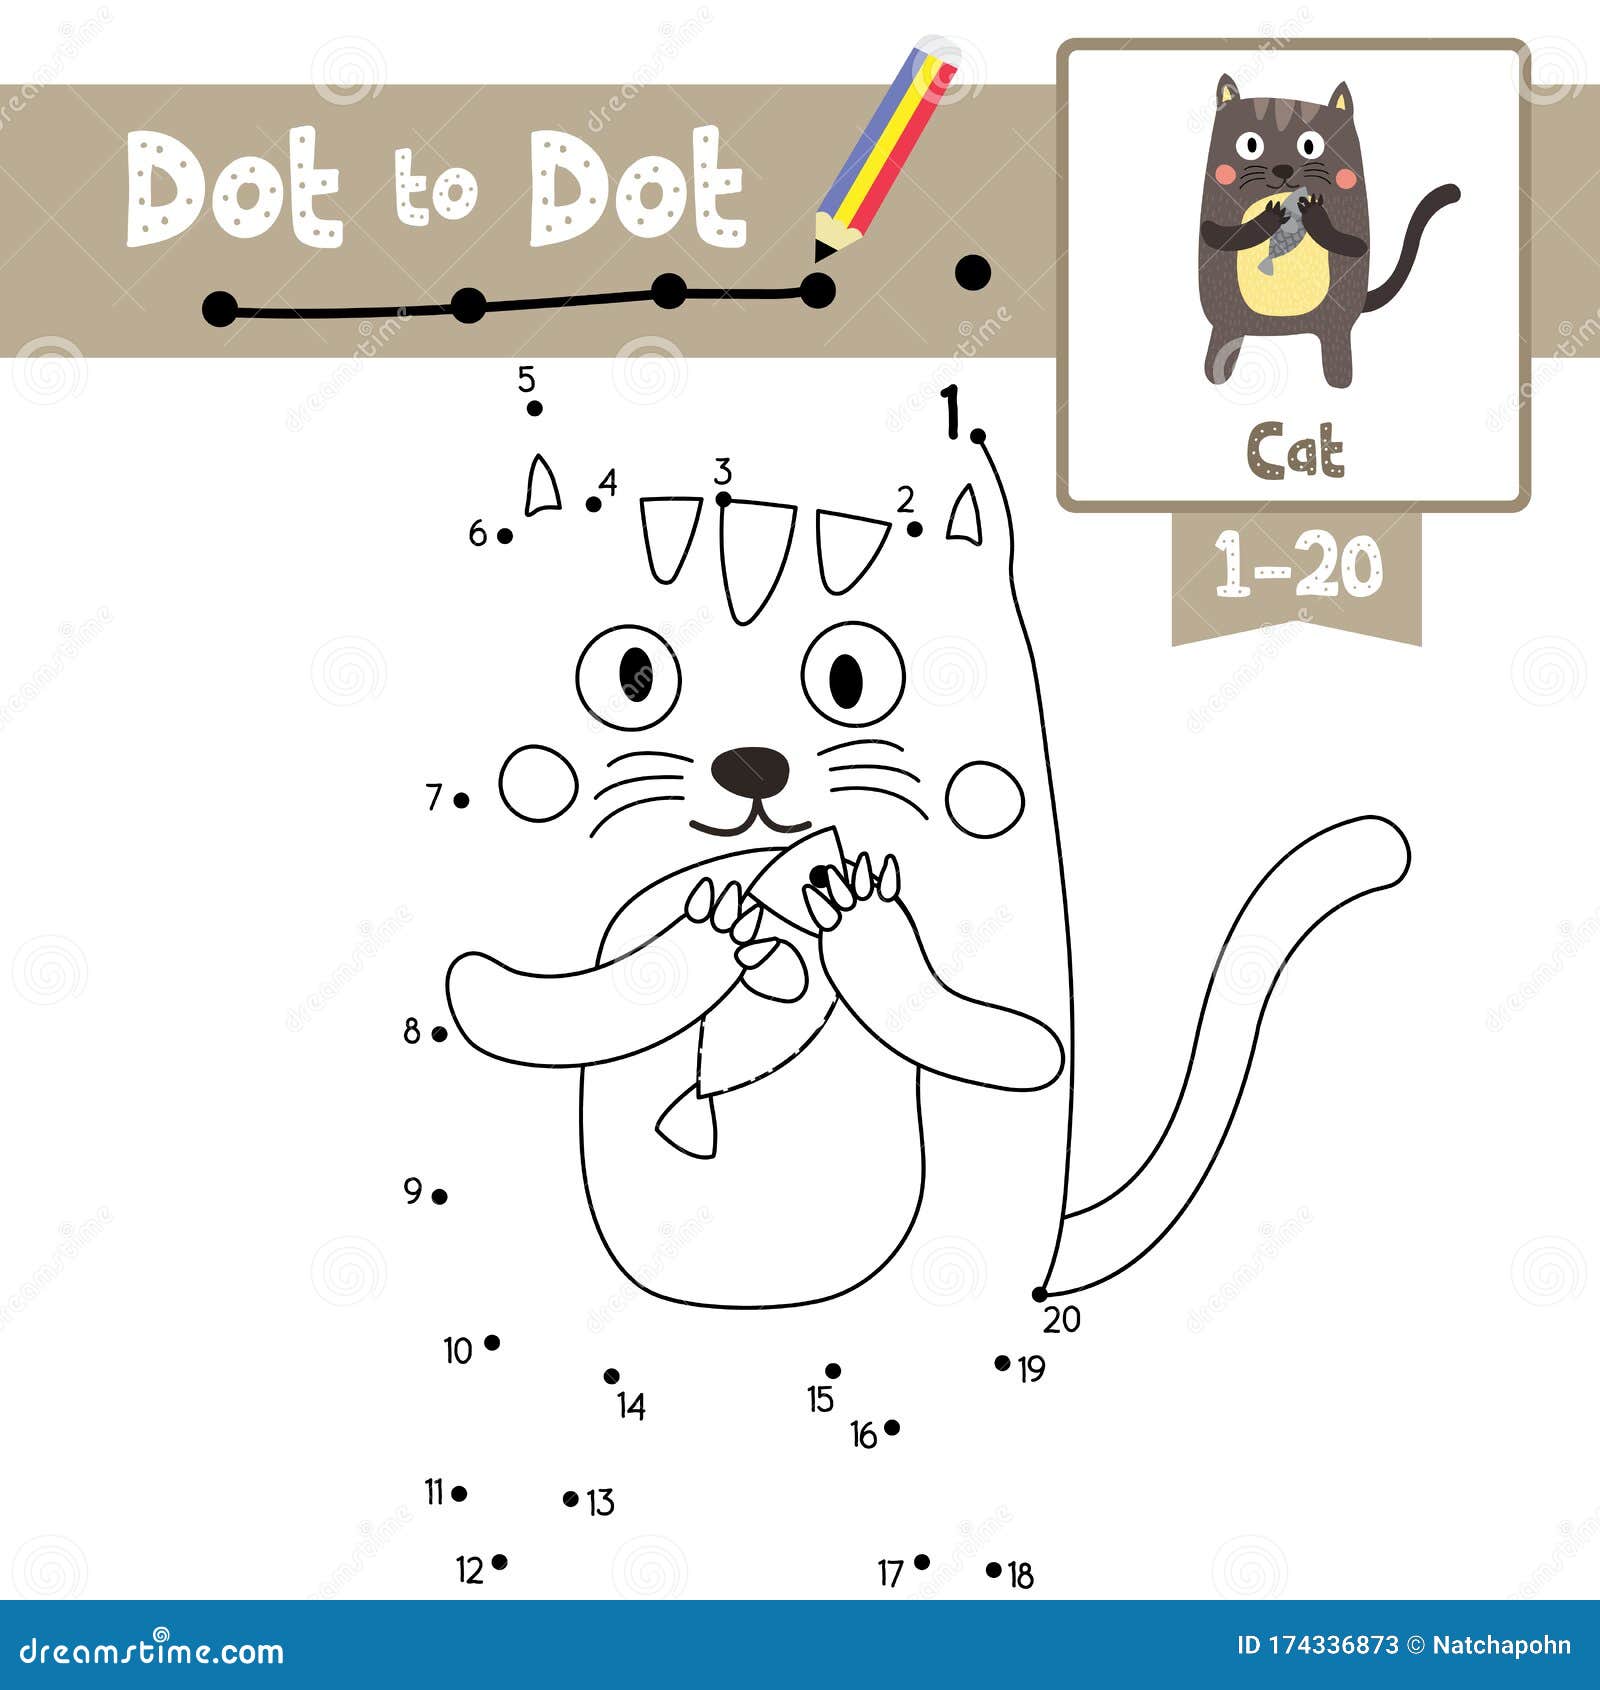 Desenhos de Silhueta de gato para colorir, jogos de pintar e imprimir